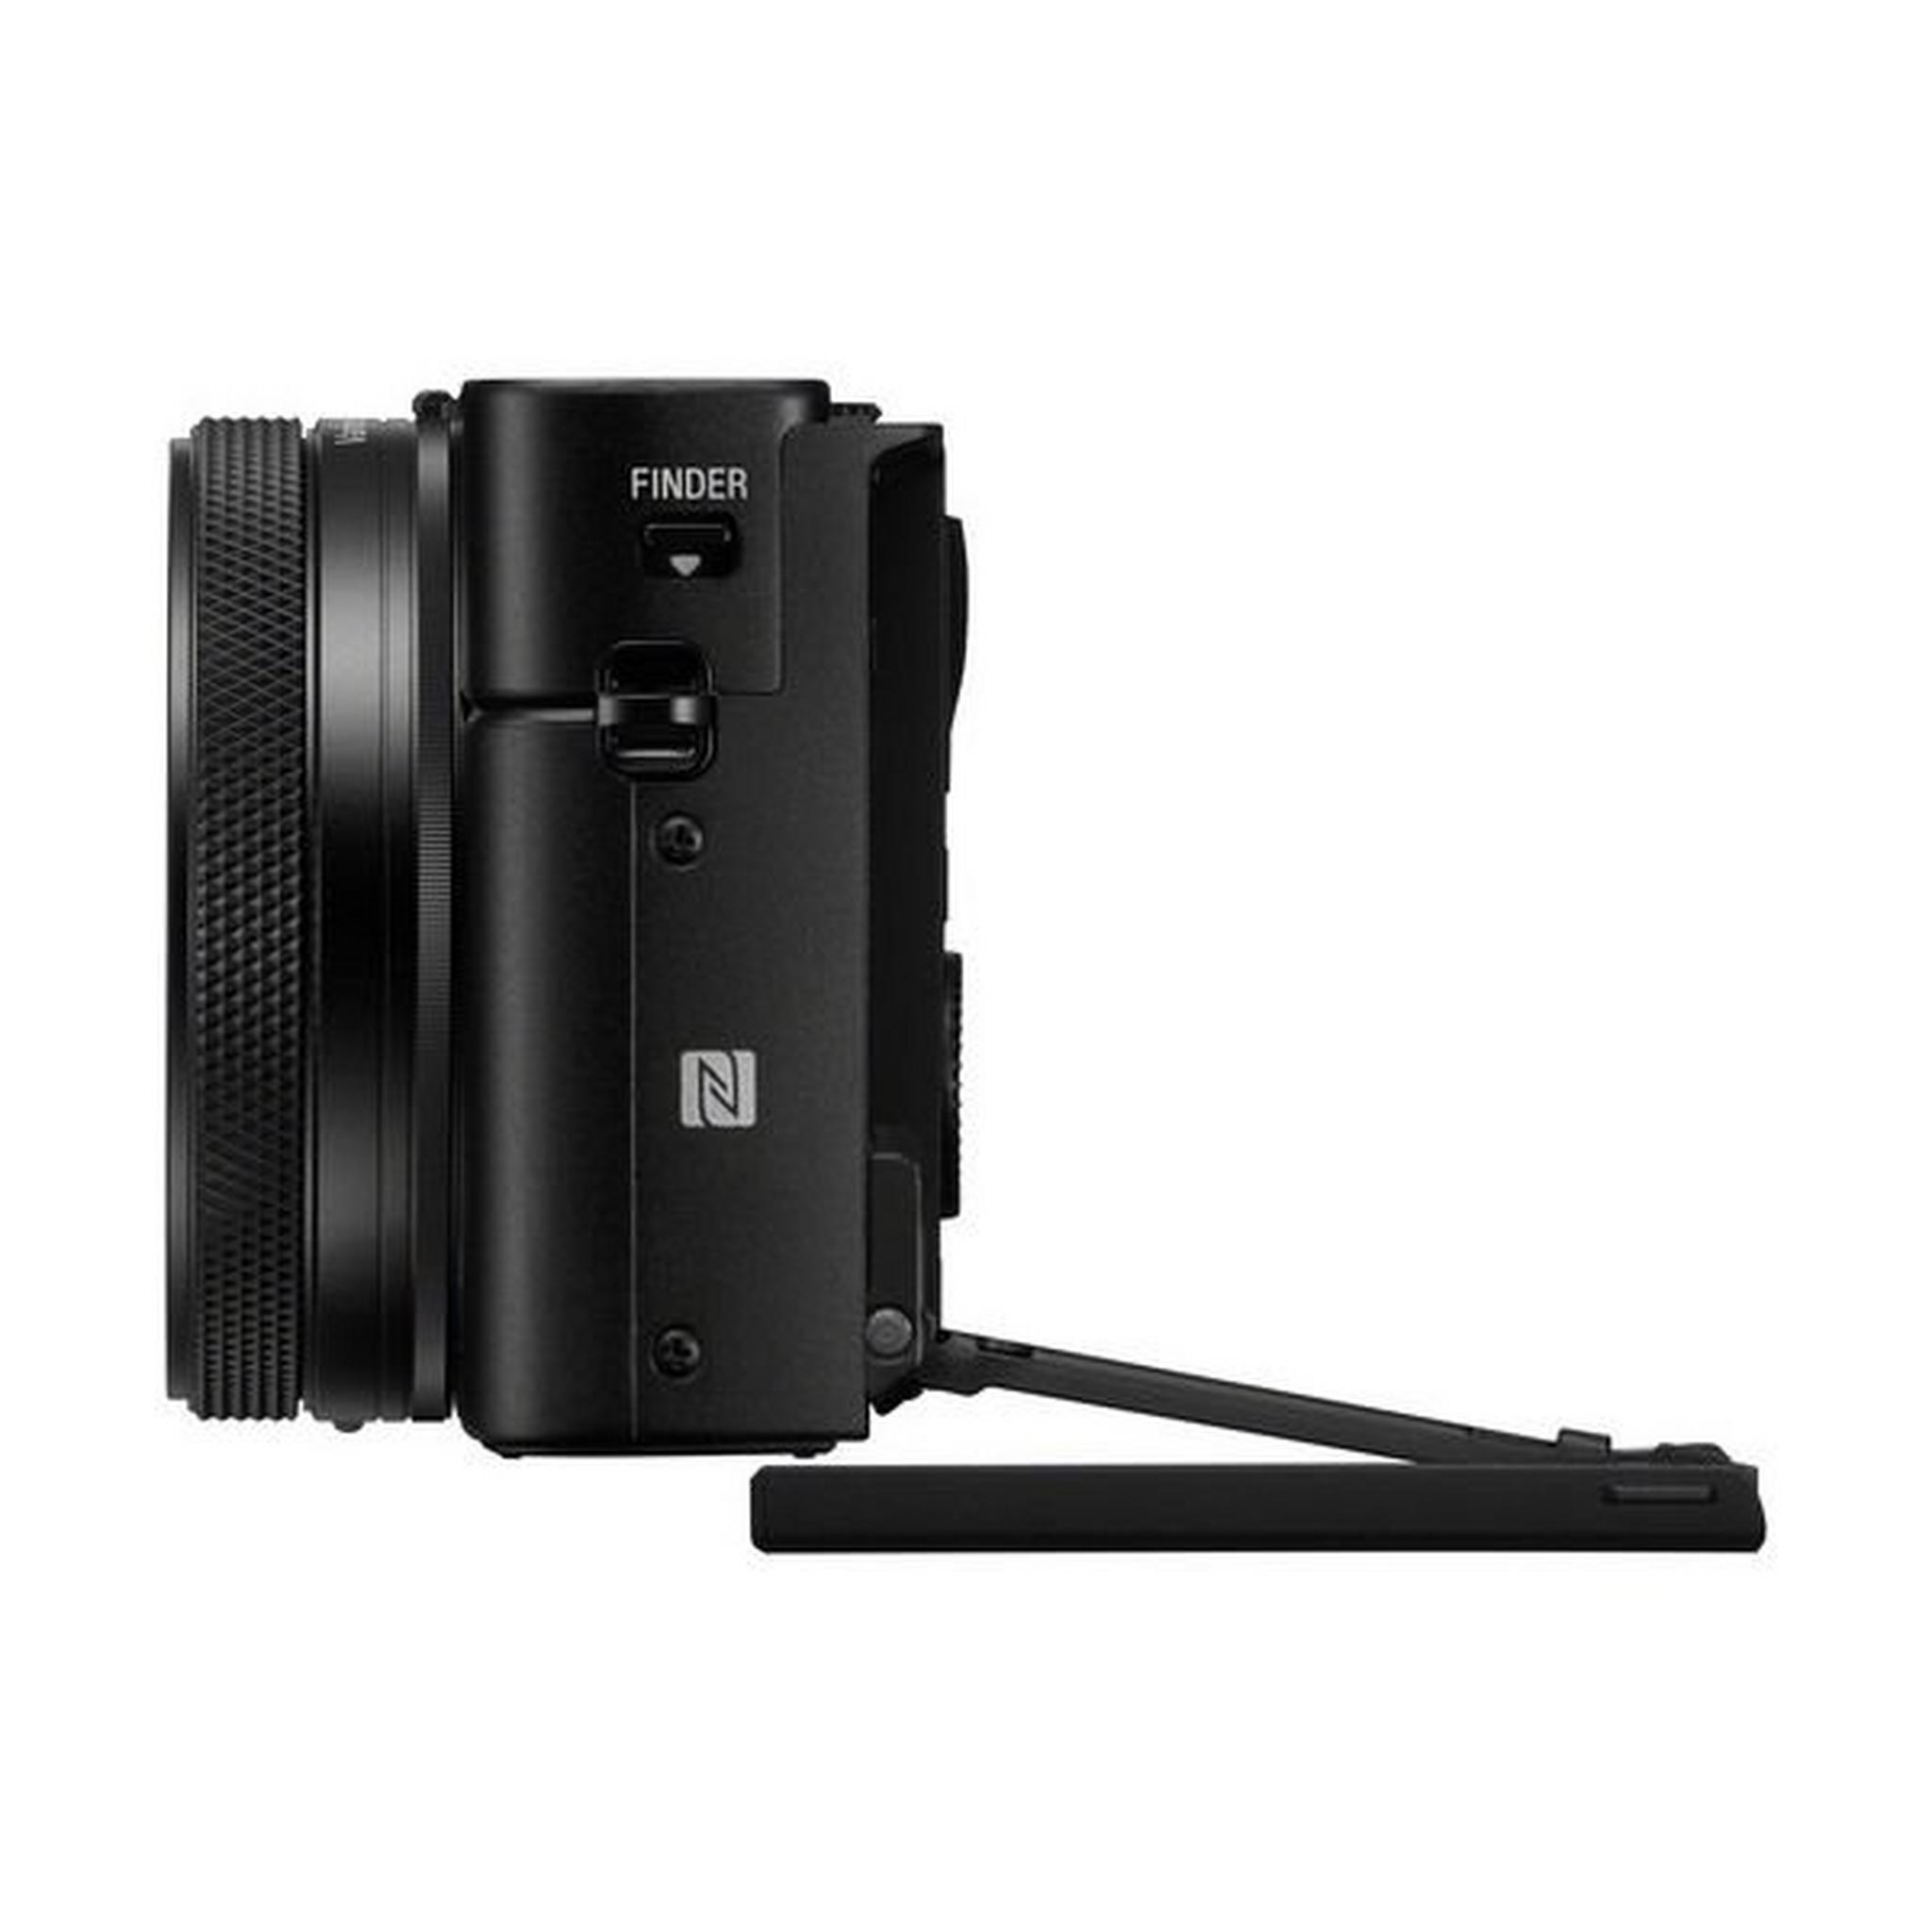 كاميرا ديجيتال سايبر شوت دي اس سي -أر أكس100M7 من سوني - 20.1 ميجابكسل - أسود